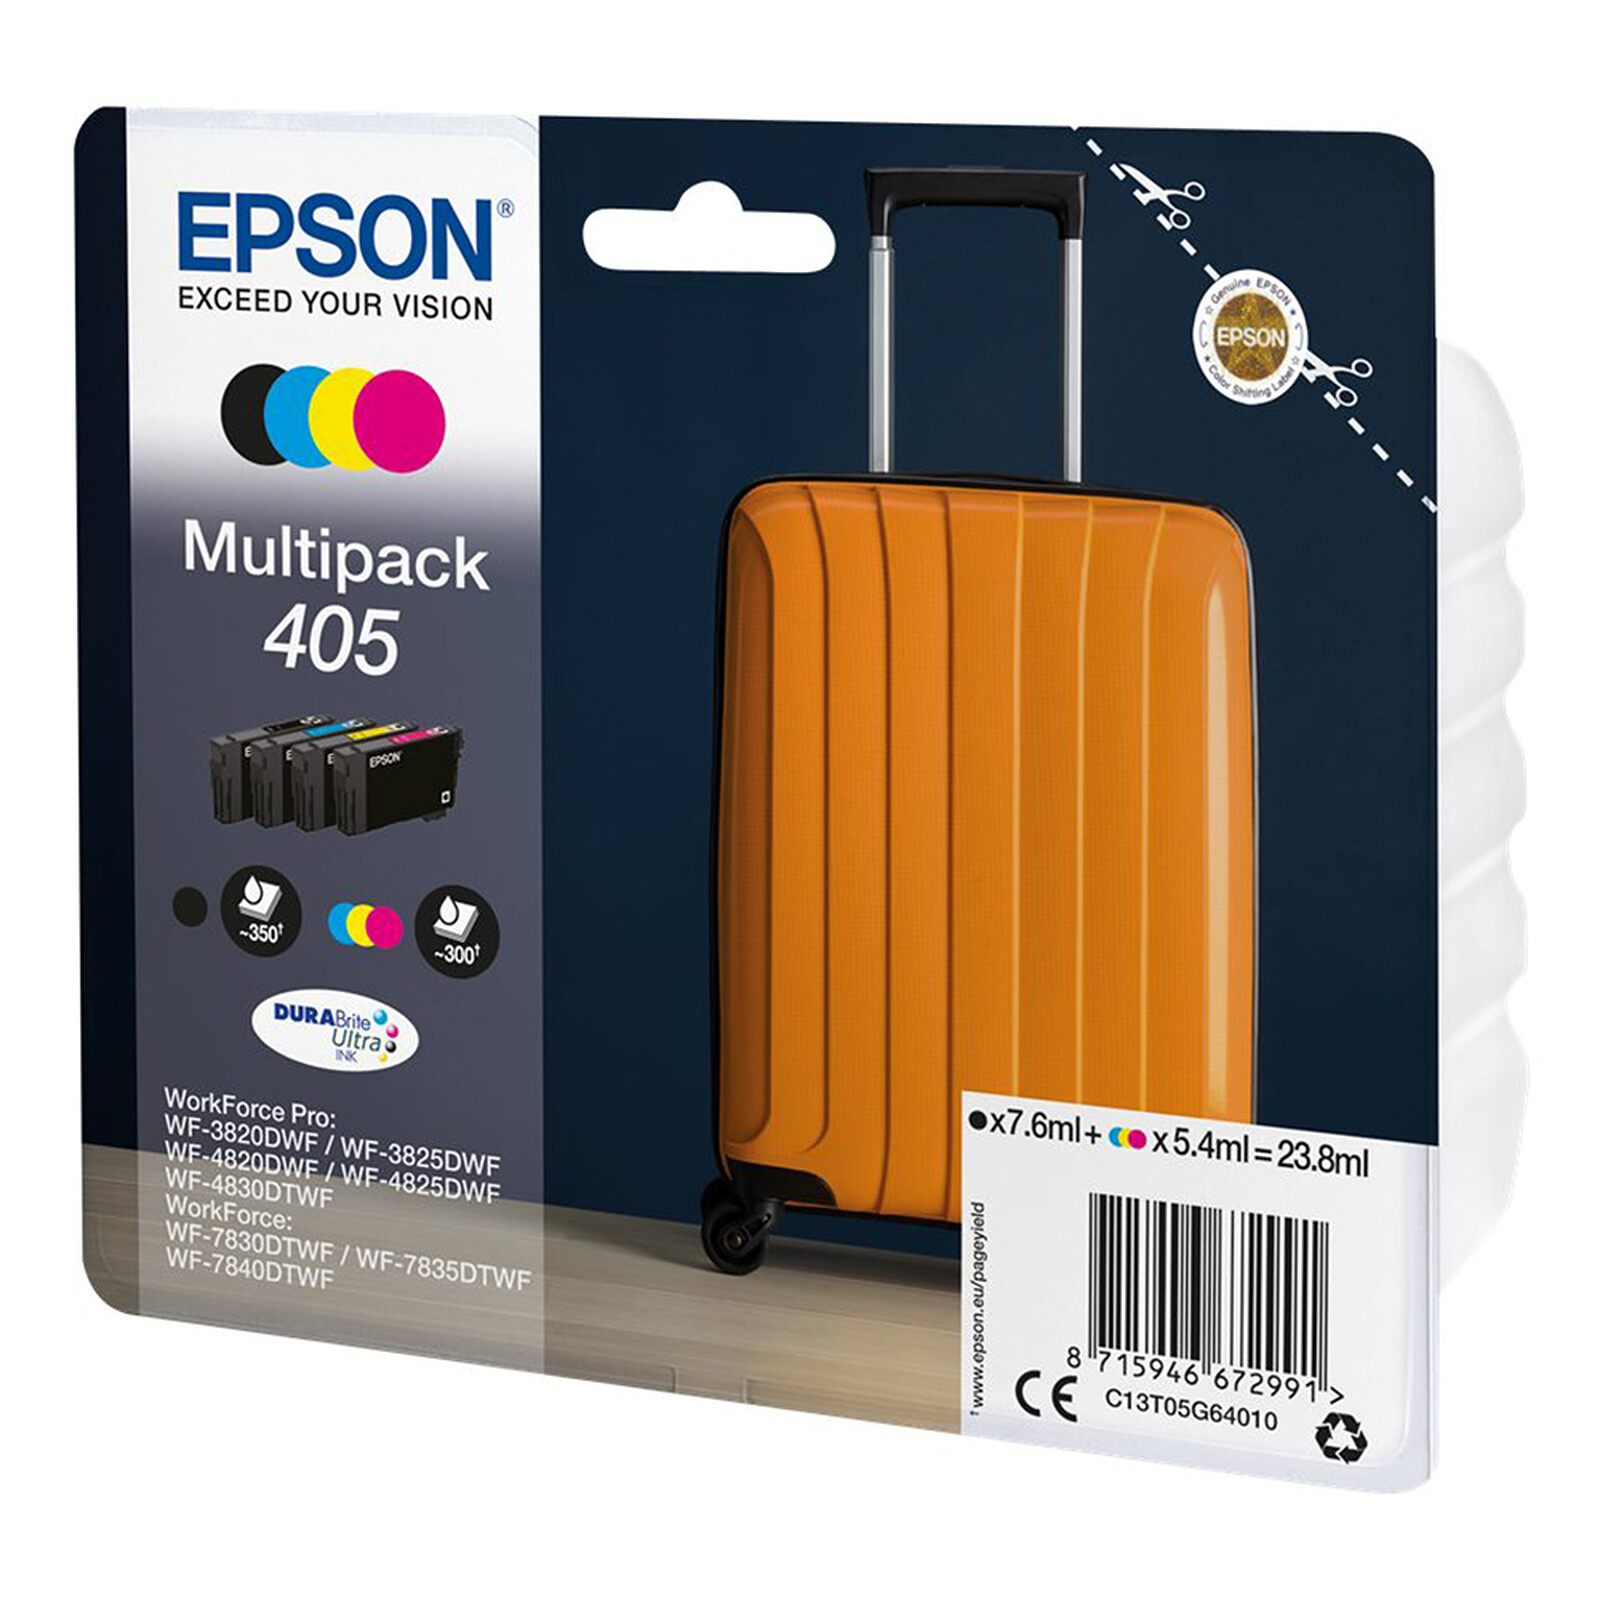 Epson Valise 405 4 couleurs - Cartouche imprimante - LDLC